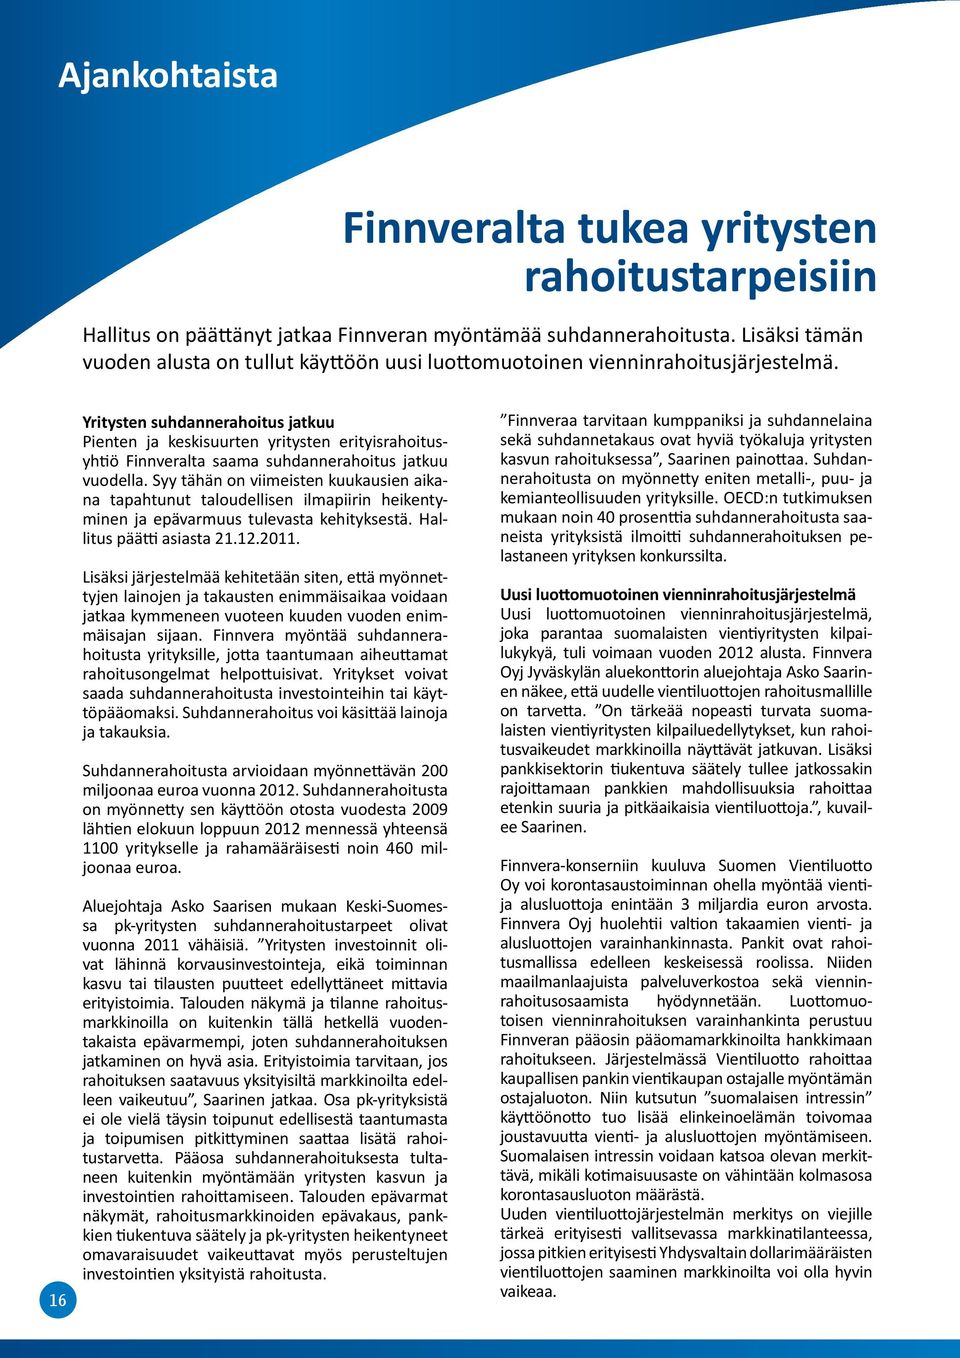 16 Yritysten suhdannerahoitus jatkuu Pienten ja keskisuurten yritysten erityisrahoitusyhtiö Finnveralta saama suhdanne rahoitus jatkuu vuodella.